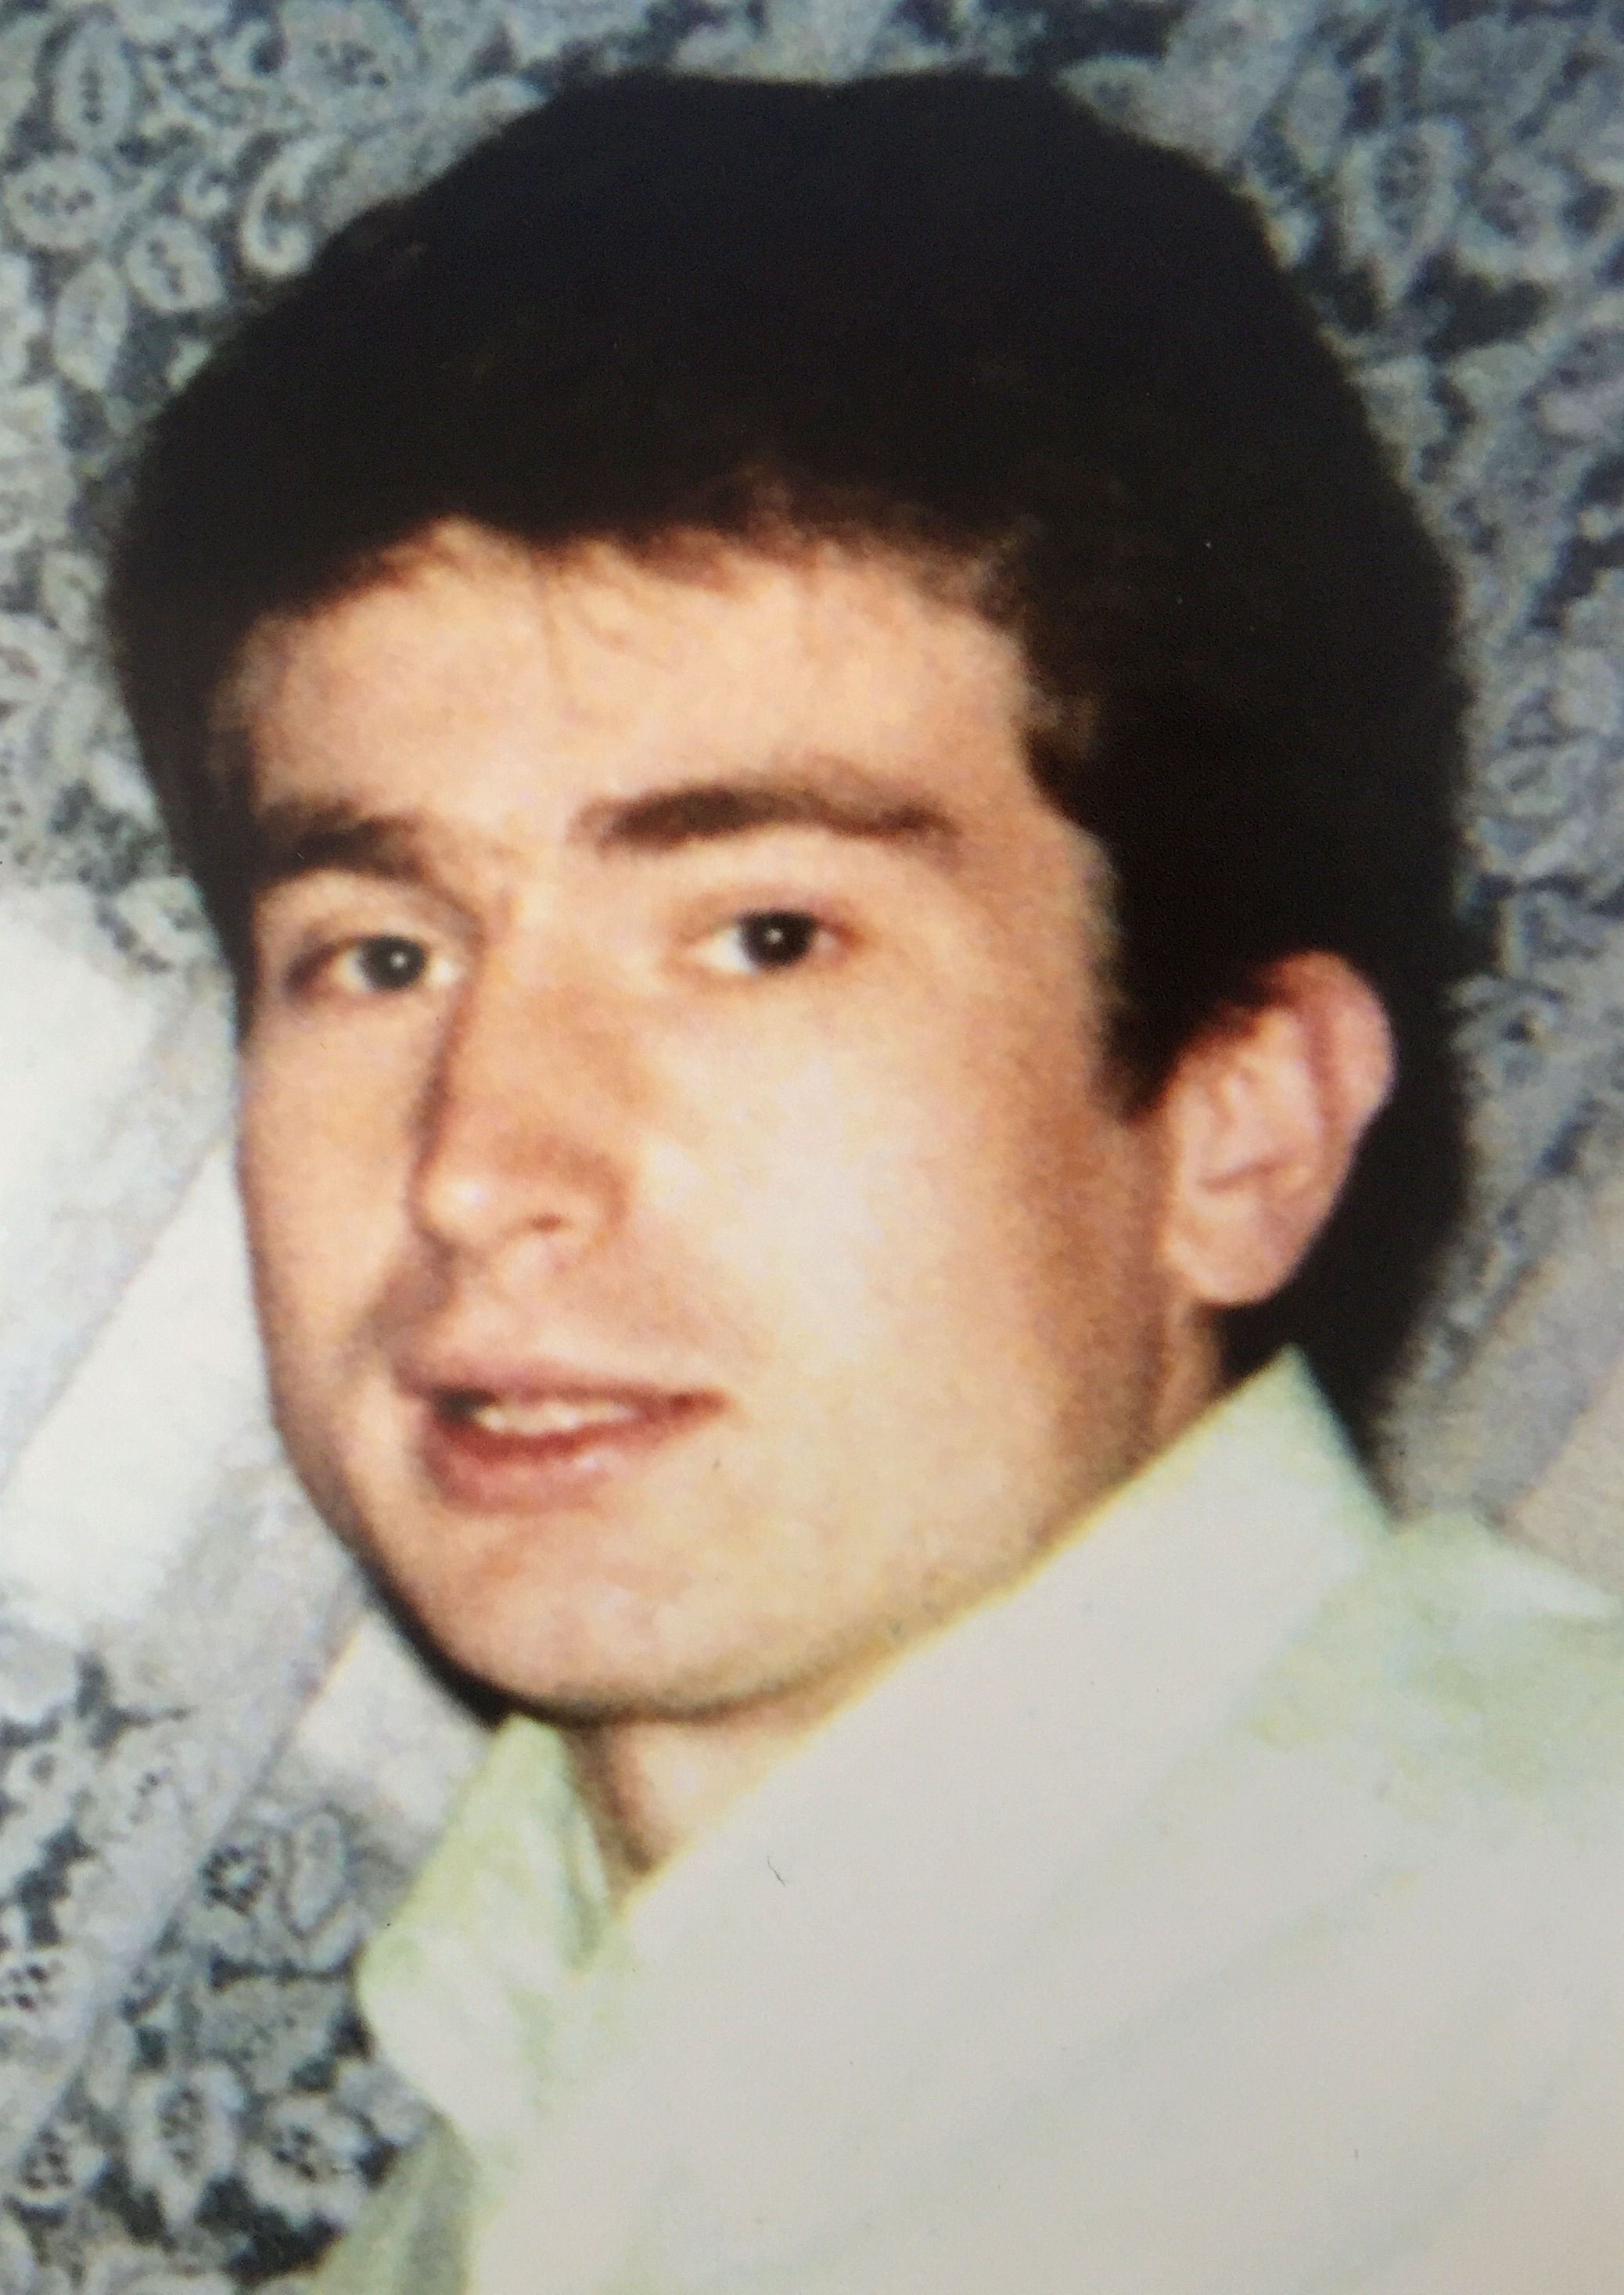 Der 43-jährige James Fox wurde im August 2015 in Enfield von Beamten erschossen